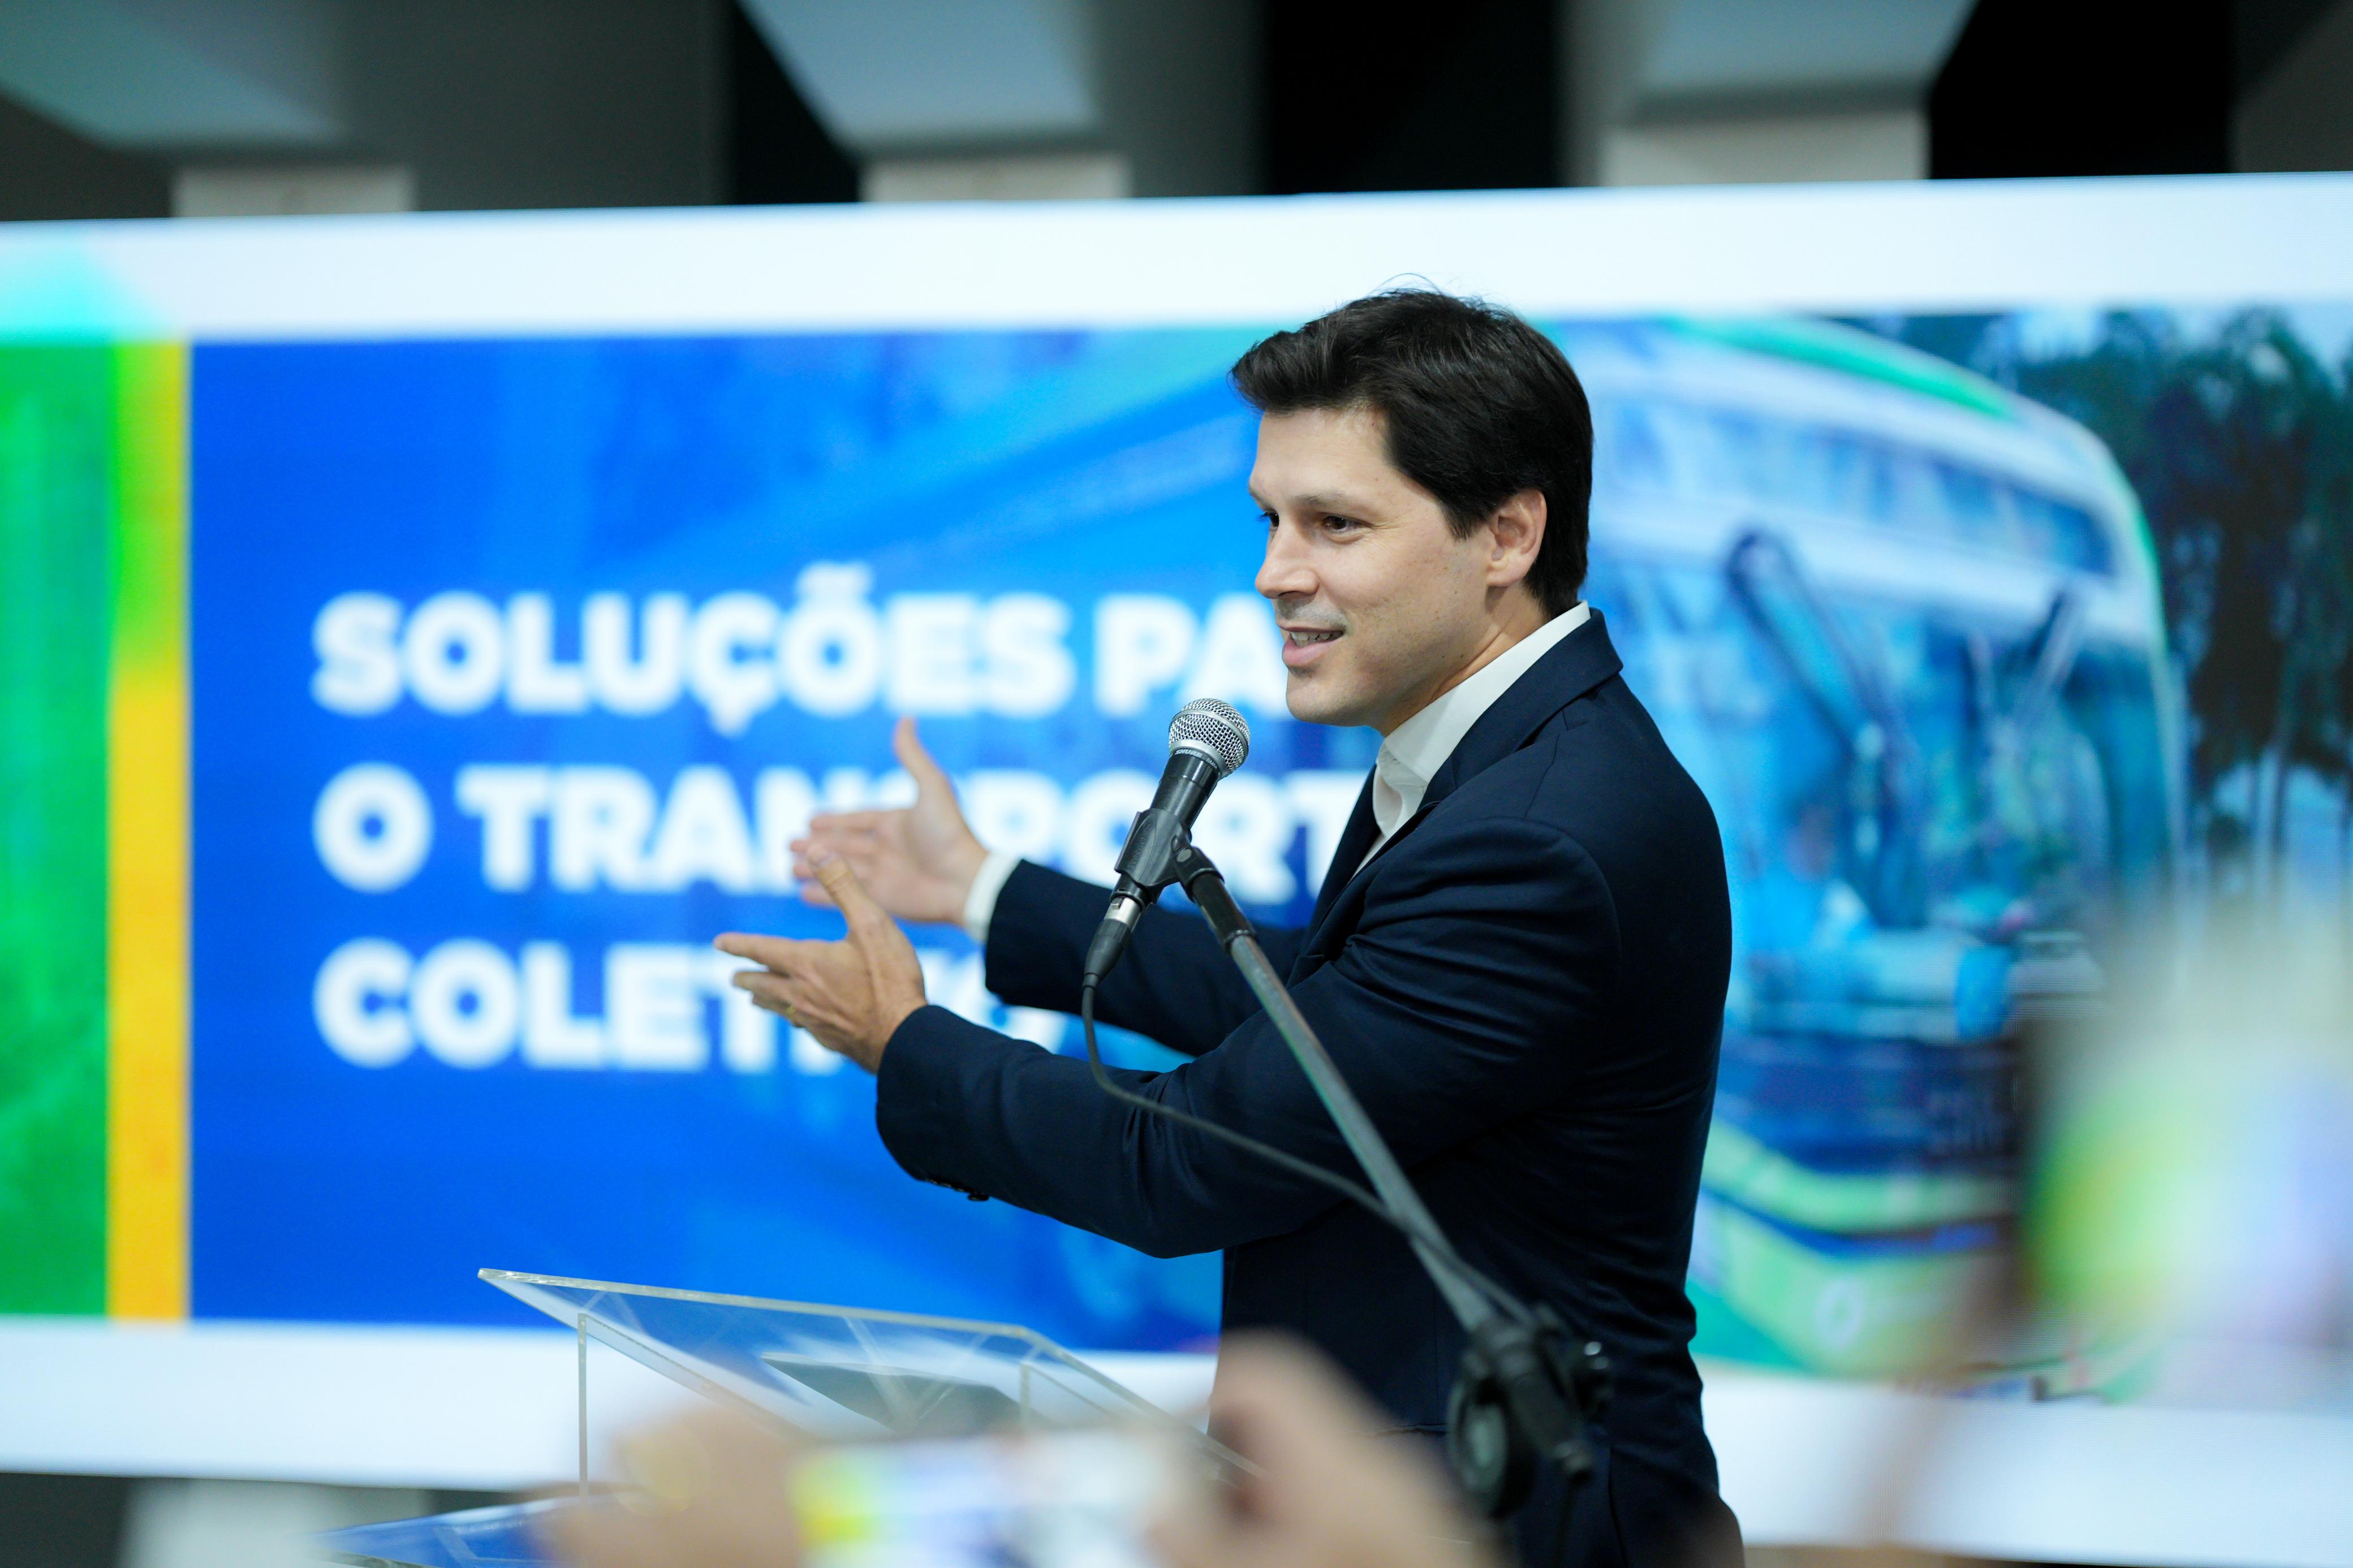 Vice-governador de Goiás, Daniel Vilela participa, ao lado do governador Ronaldo Caiado, de anúncio de melhorias para o transporte coletivo da região metropolitana de Goiânia